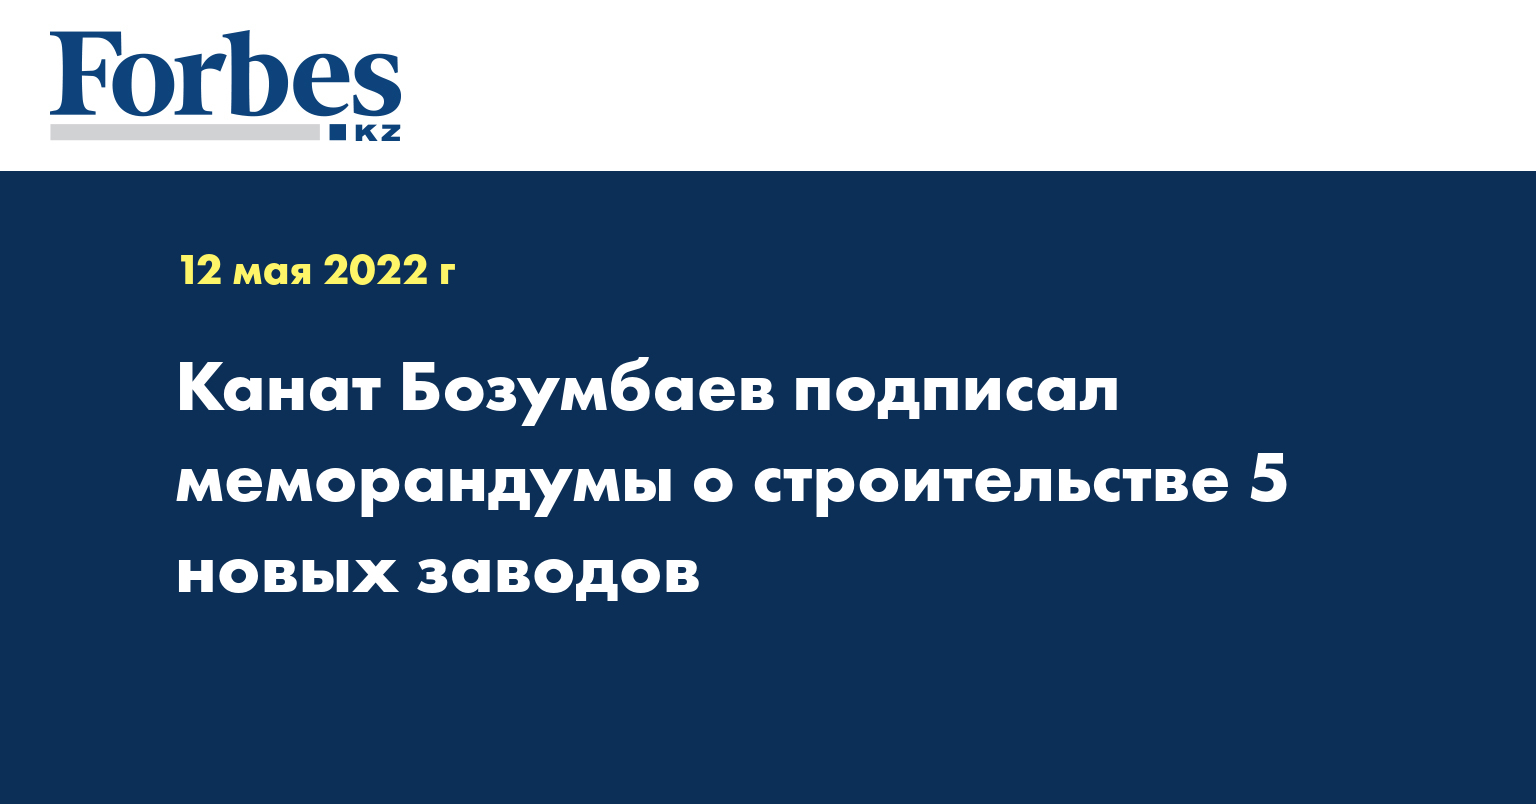 Канат Бозумбаев подписал меморандумы о строительстве 5 новых заводов